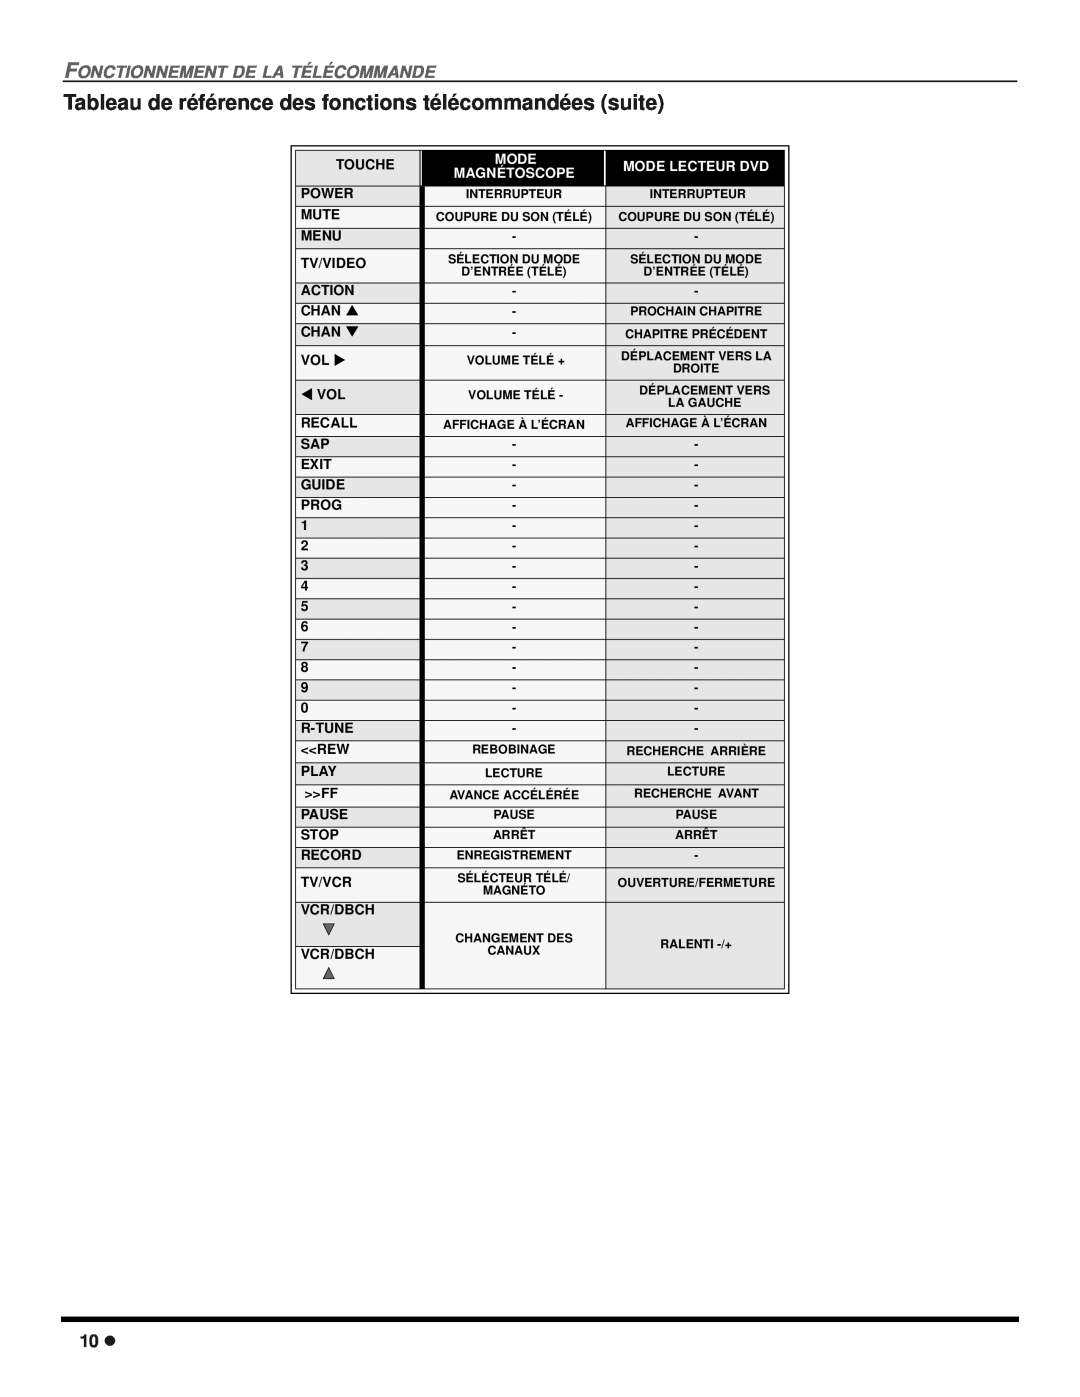 Panasonic CT 27SX12 Tableau de référence des fonctions télécommandées suite, Fonctionnement De La Télécommande, Mode, Chan 